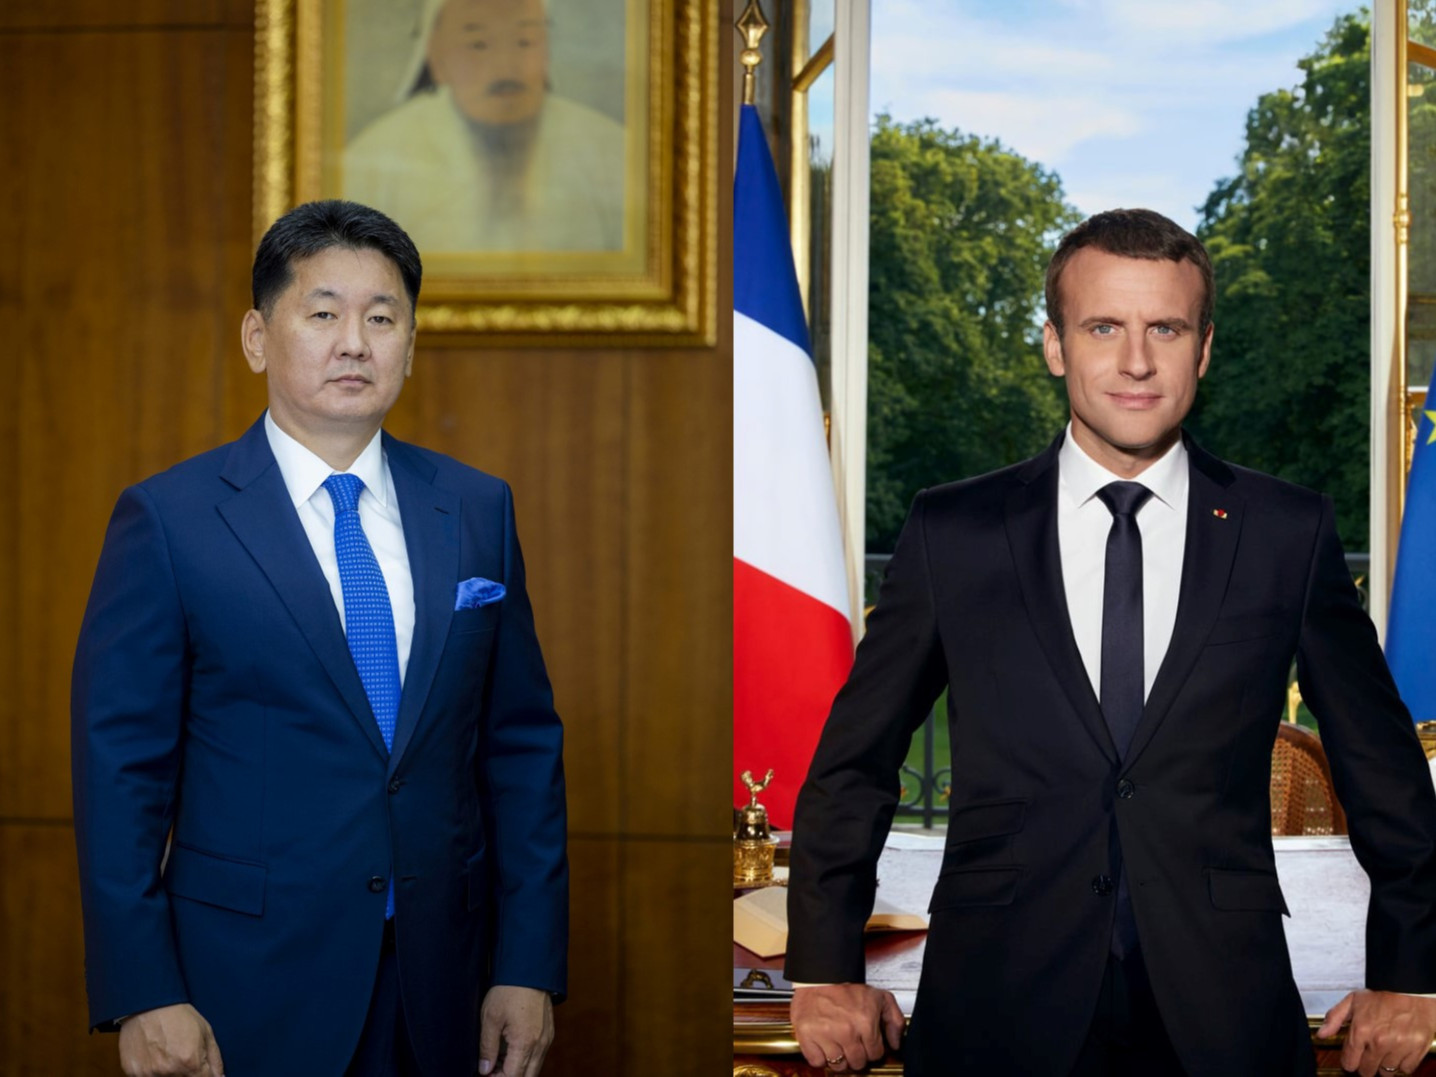 ШУУРХАЙ: "Францын Ерөнхийлөгч Э.Макрон энэ сарын 21, 22 -нд Монгол Улсад төрийн айлчлал хийнэ" гэж албан ёсоор мэдэгдлээ